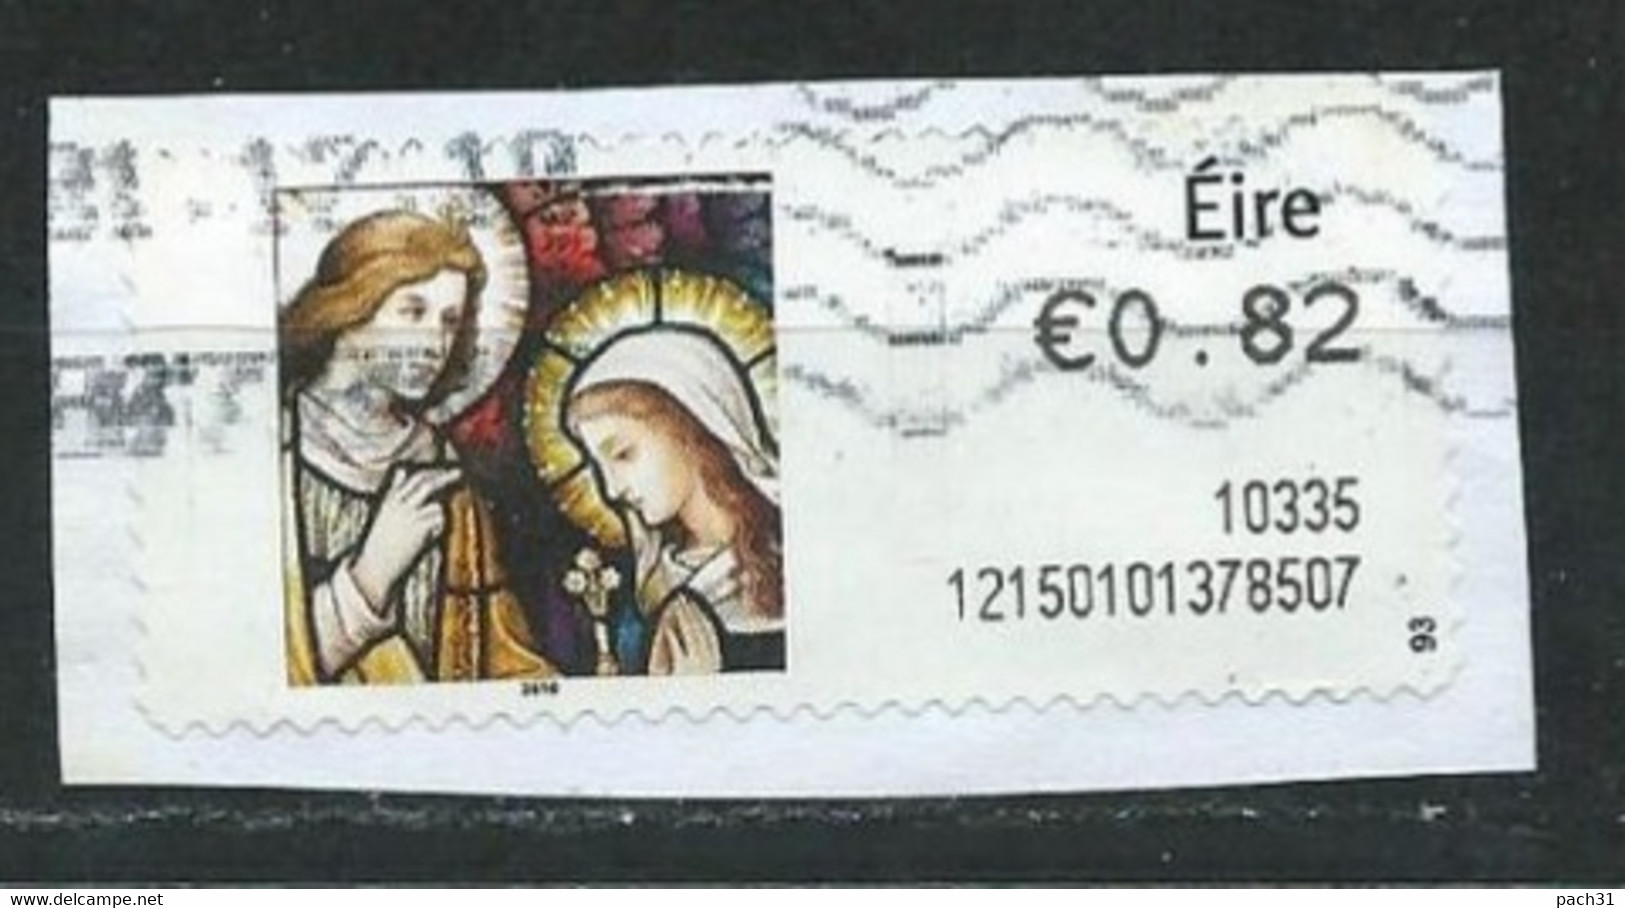 Irlande Vignette D'affranchissement 0,82E 2010  Religion - Viñetas De Franqueo (Frama)